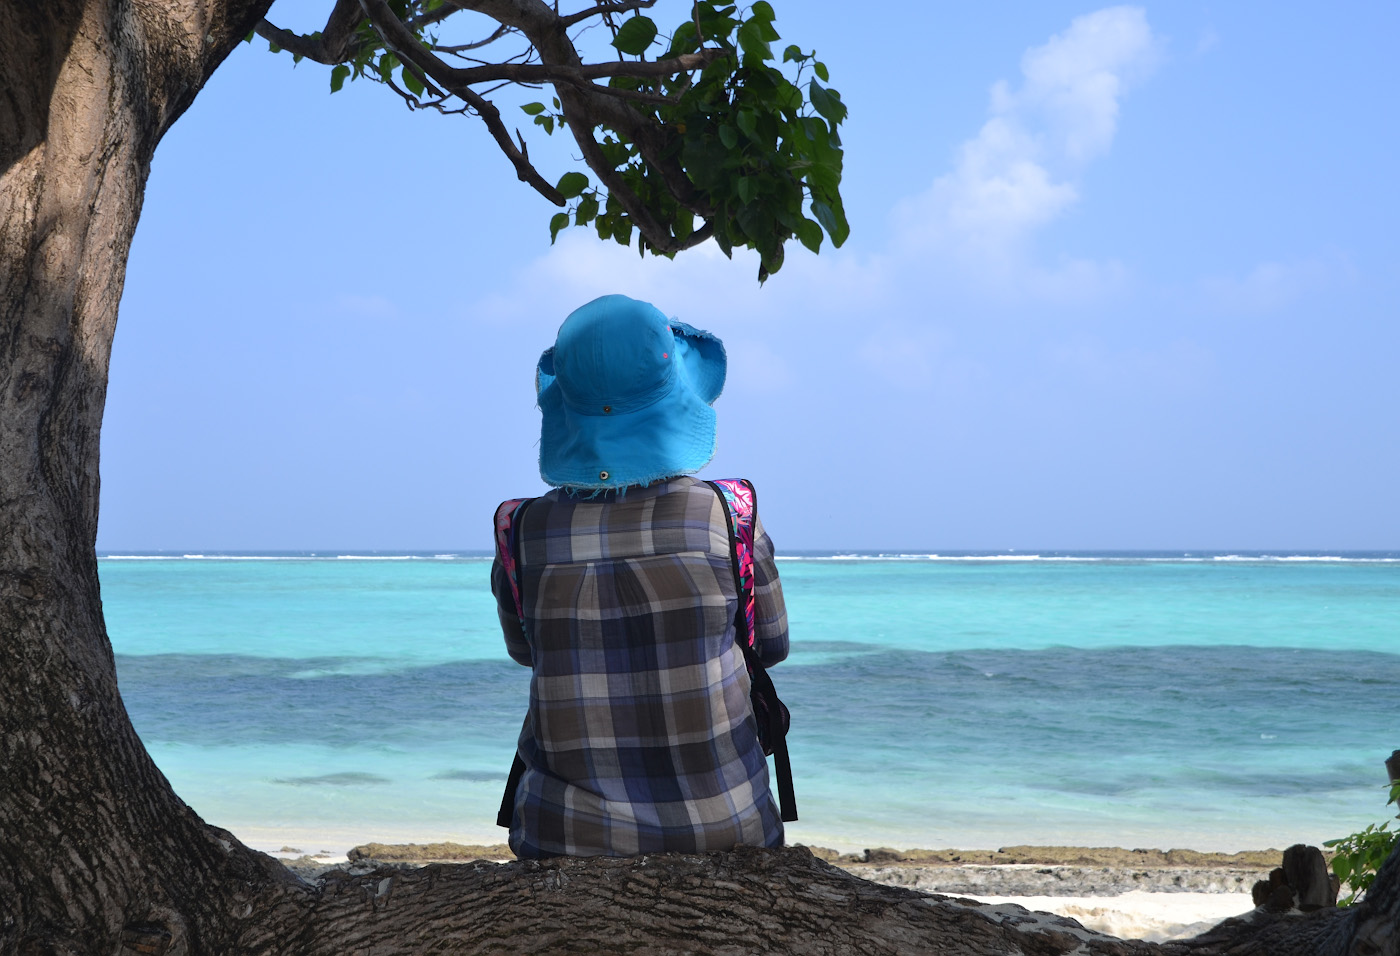 Фото 25. Мечты об отдыхе на Мальдивах пусть станут реальностью. До свиданья, Тодду! 1/320, 9, 100, 55.